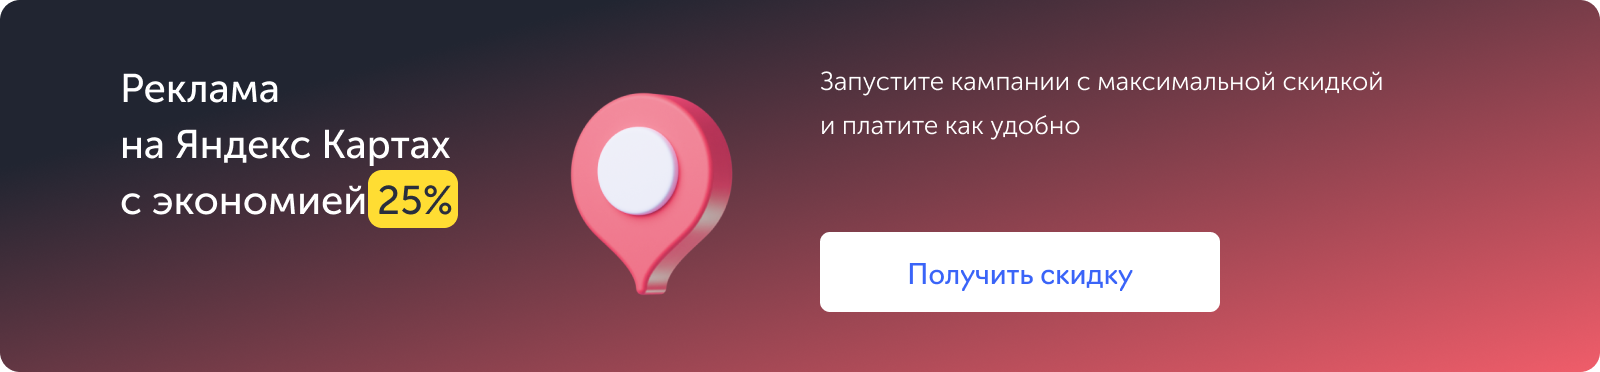 Яндекс Карты, скидка 25%